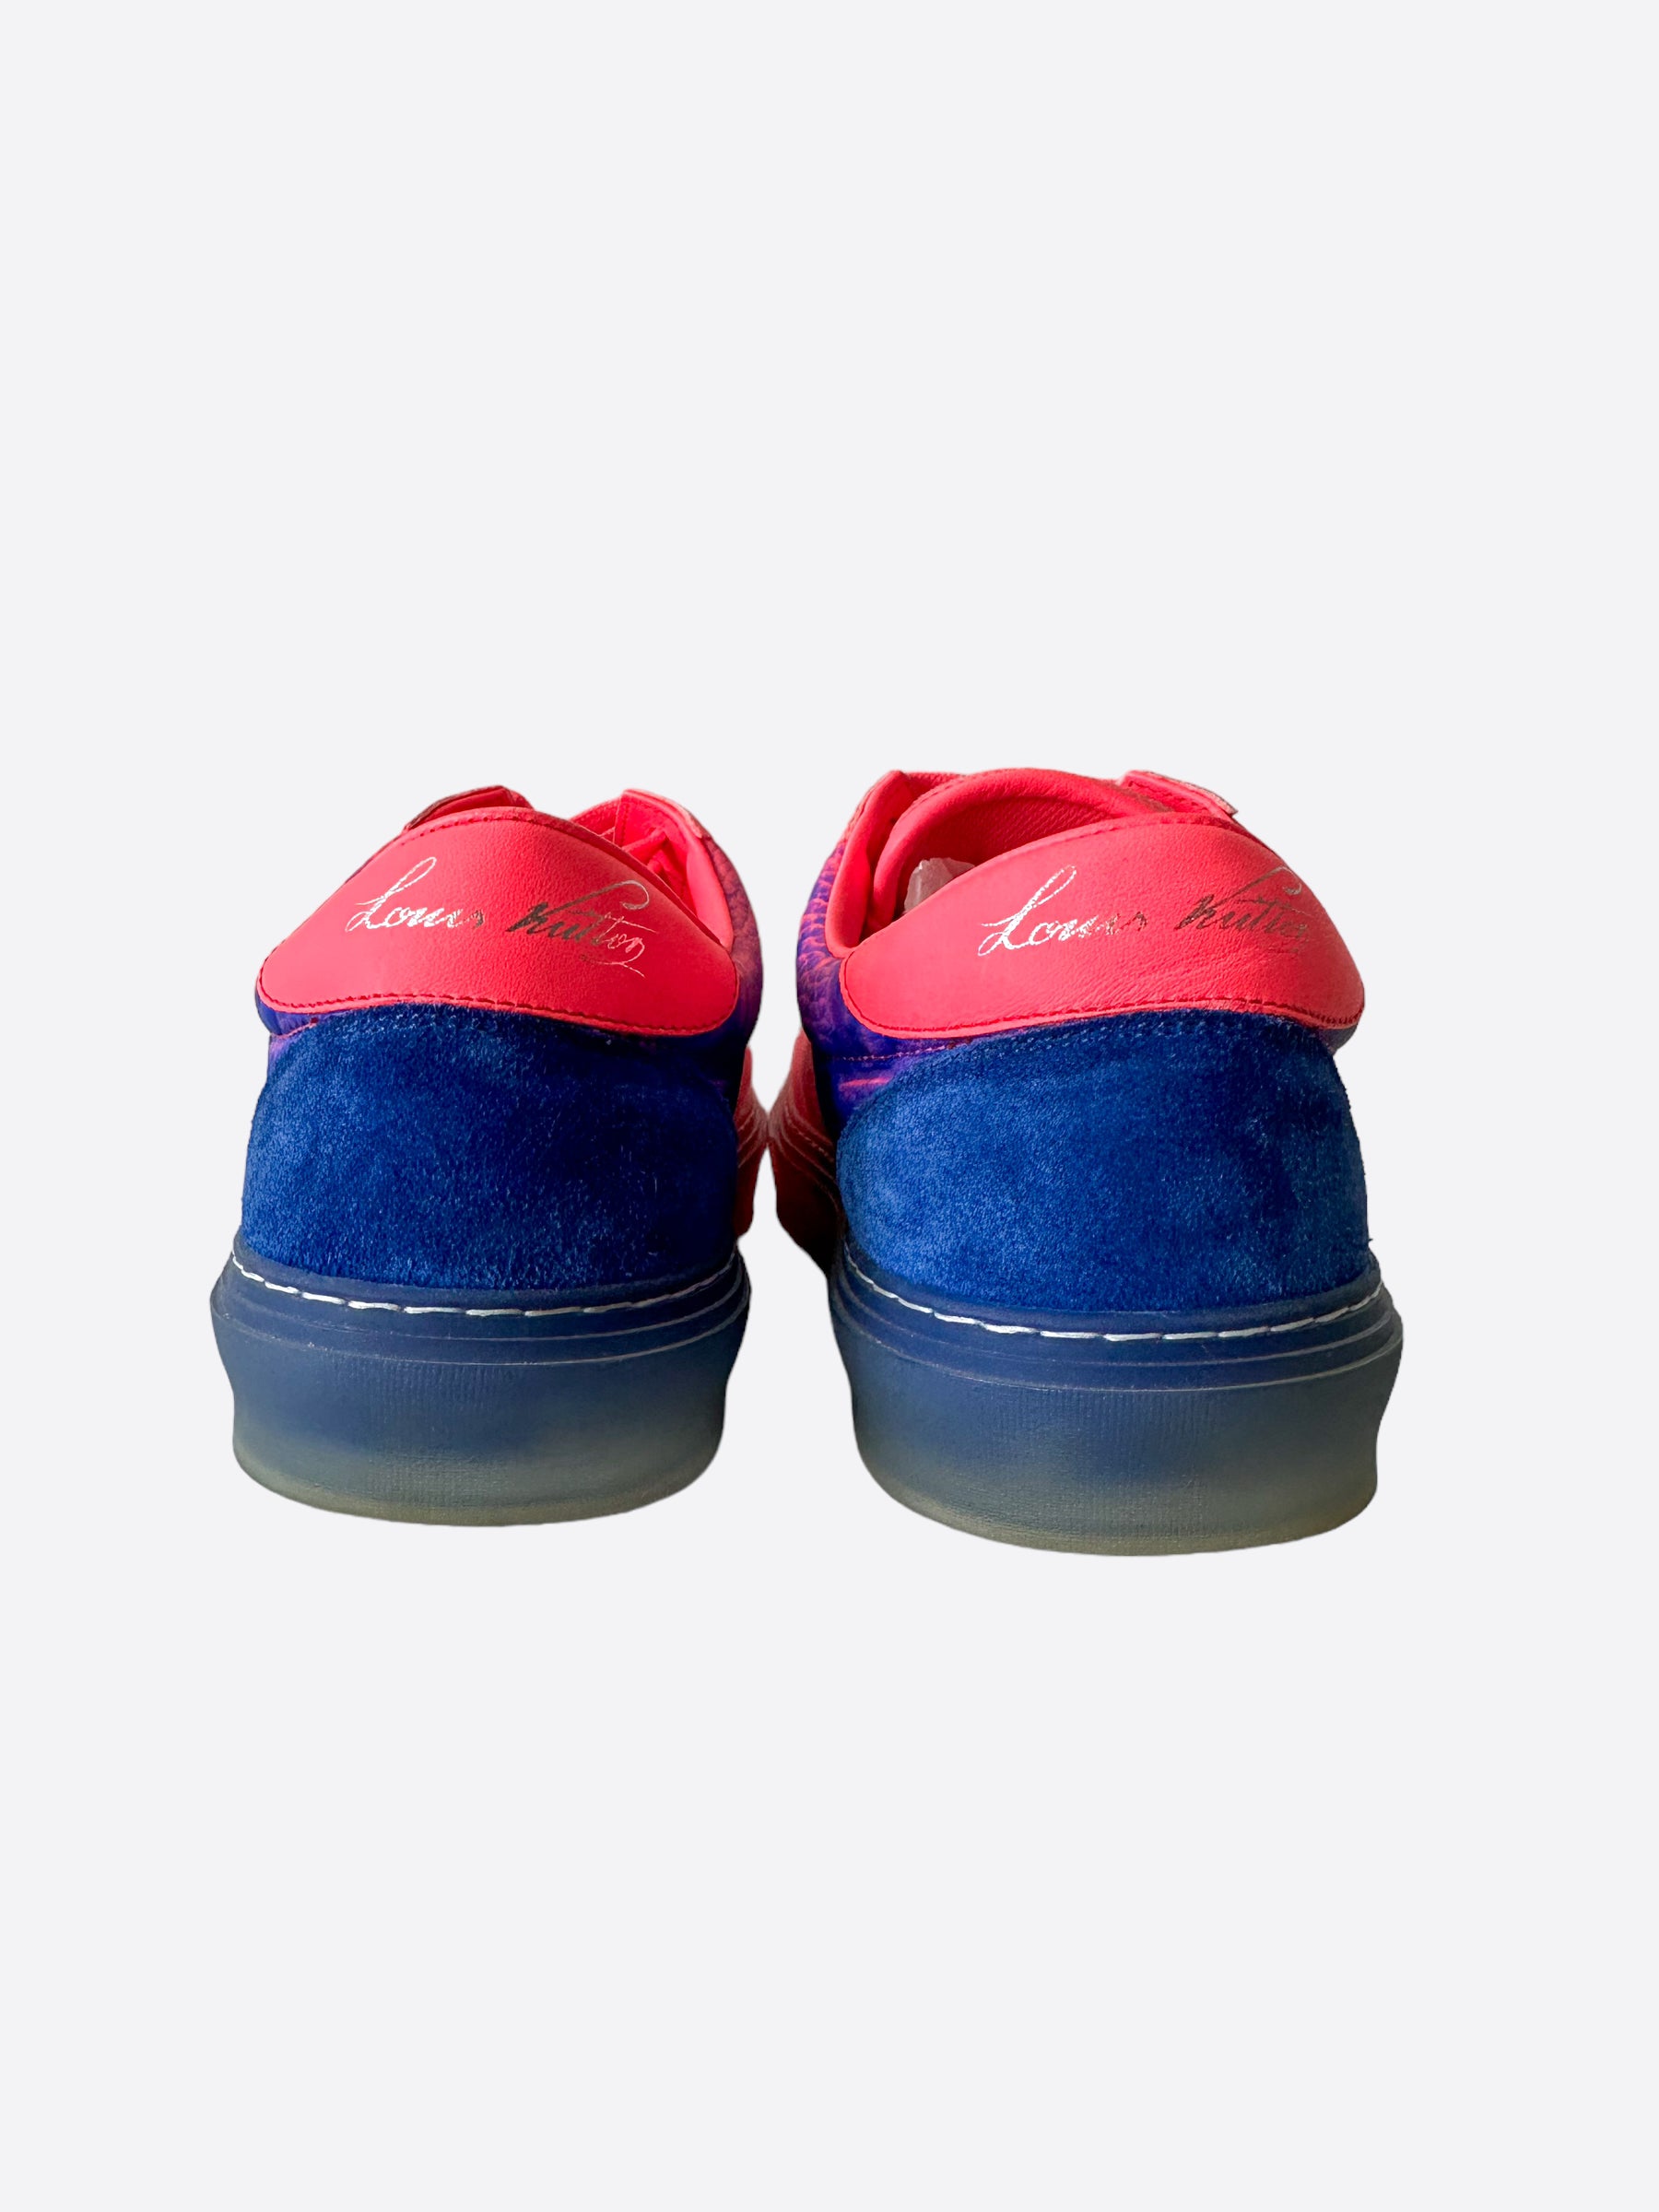 Louis Vuitton Ollie Richelieu Pink, Sneaker